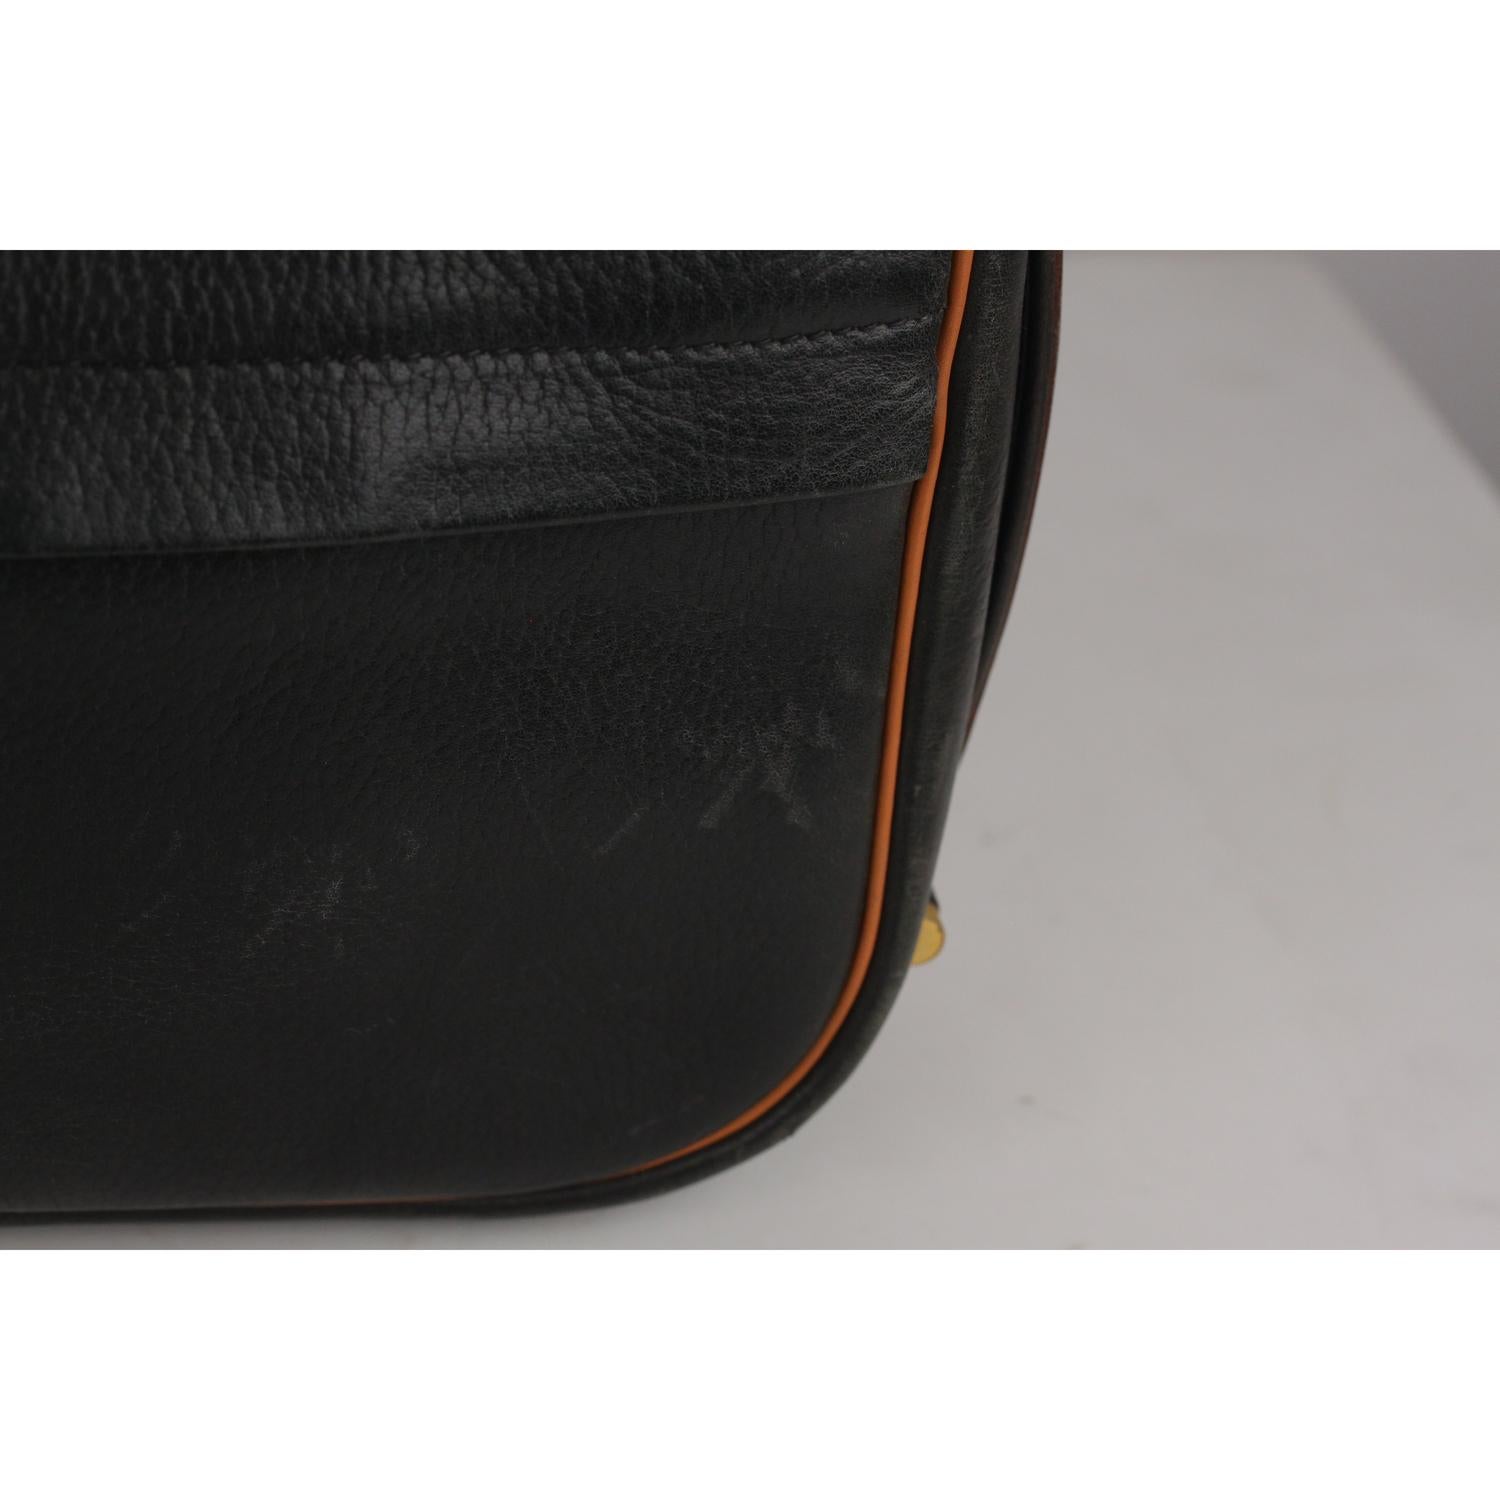 Hermes Vintage Black and Tan Leather Noumea Shoulder Bag 1